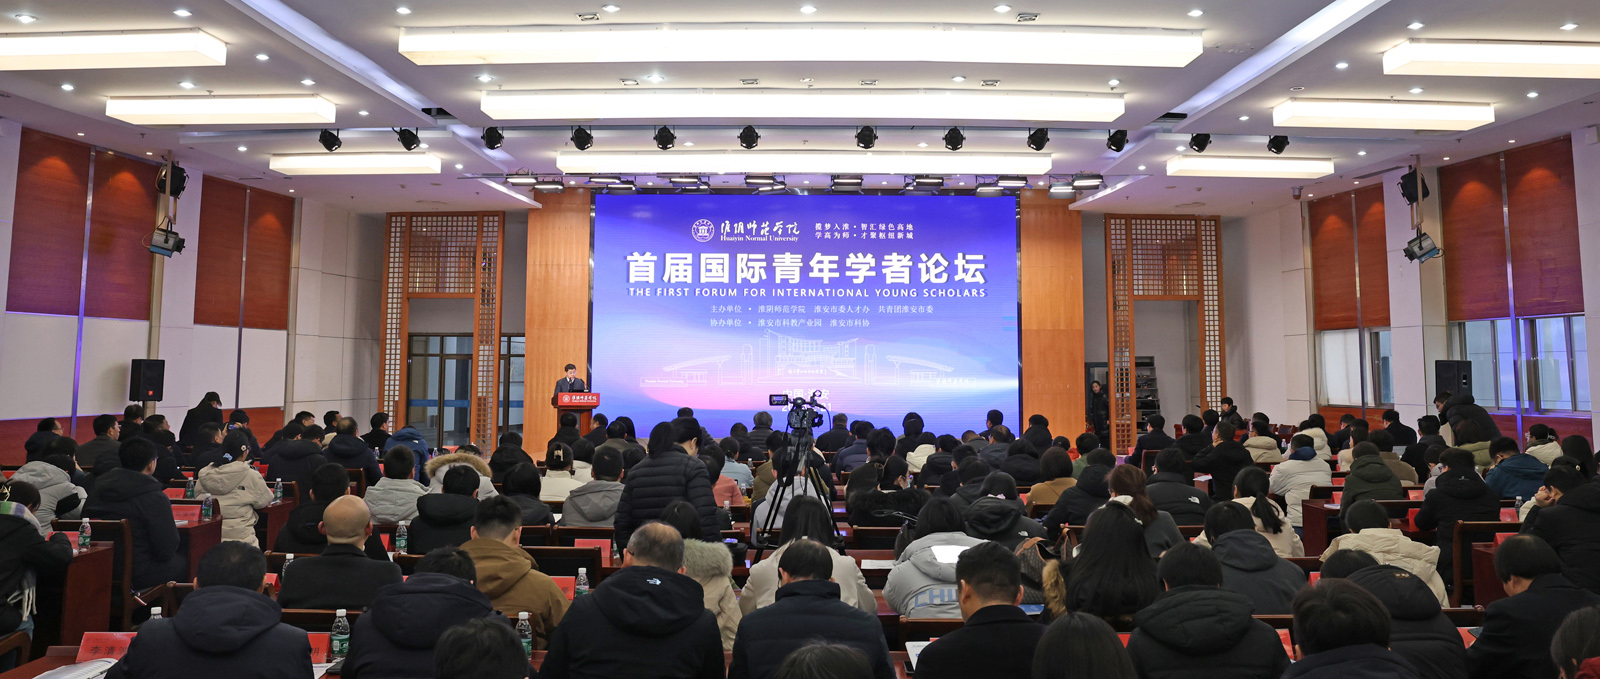 竞博体育jbo首届国际青年学者论坛隆重举行